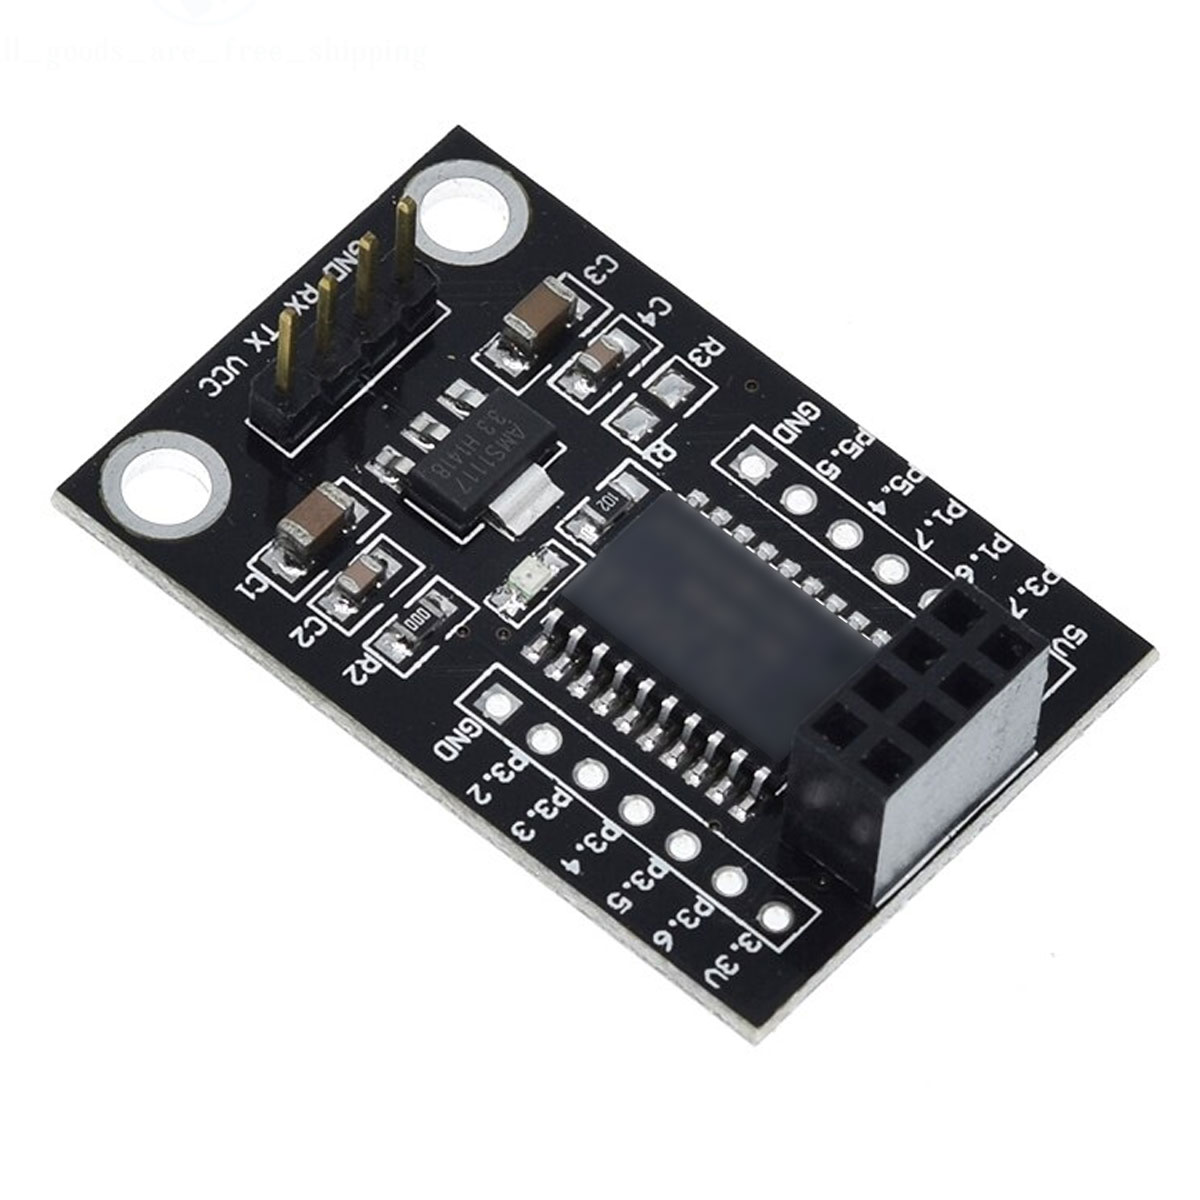 Placa Shield com Microcontrolador STC15F204 para o módulo sem fio NRF24L01